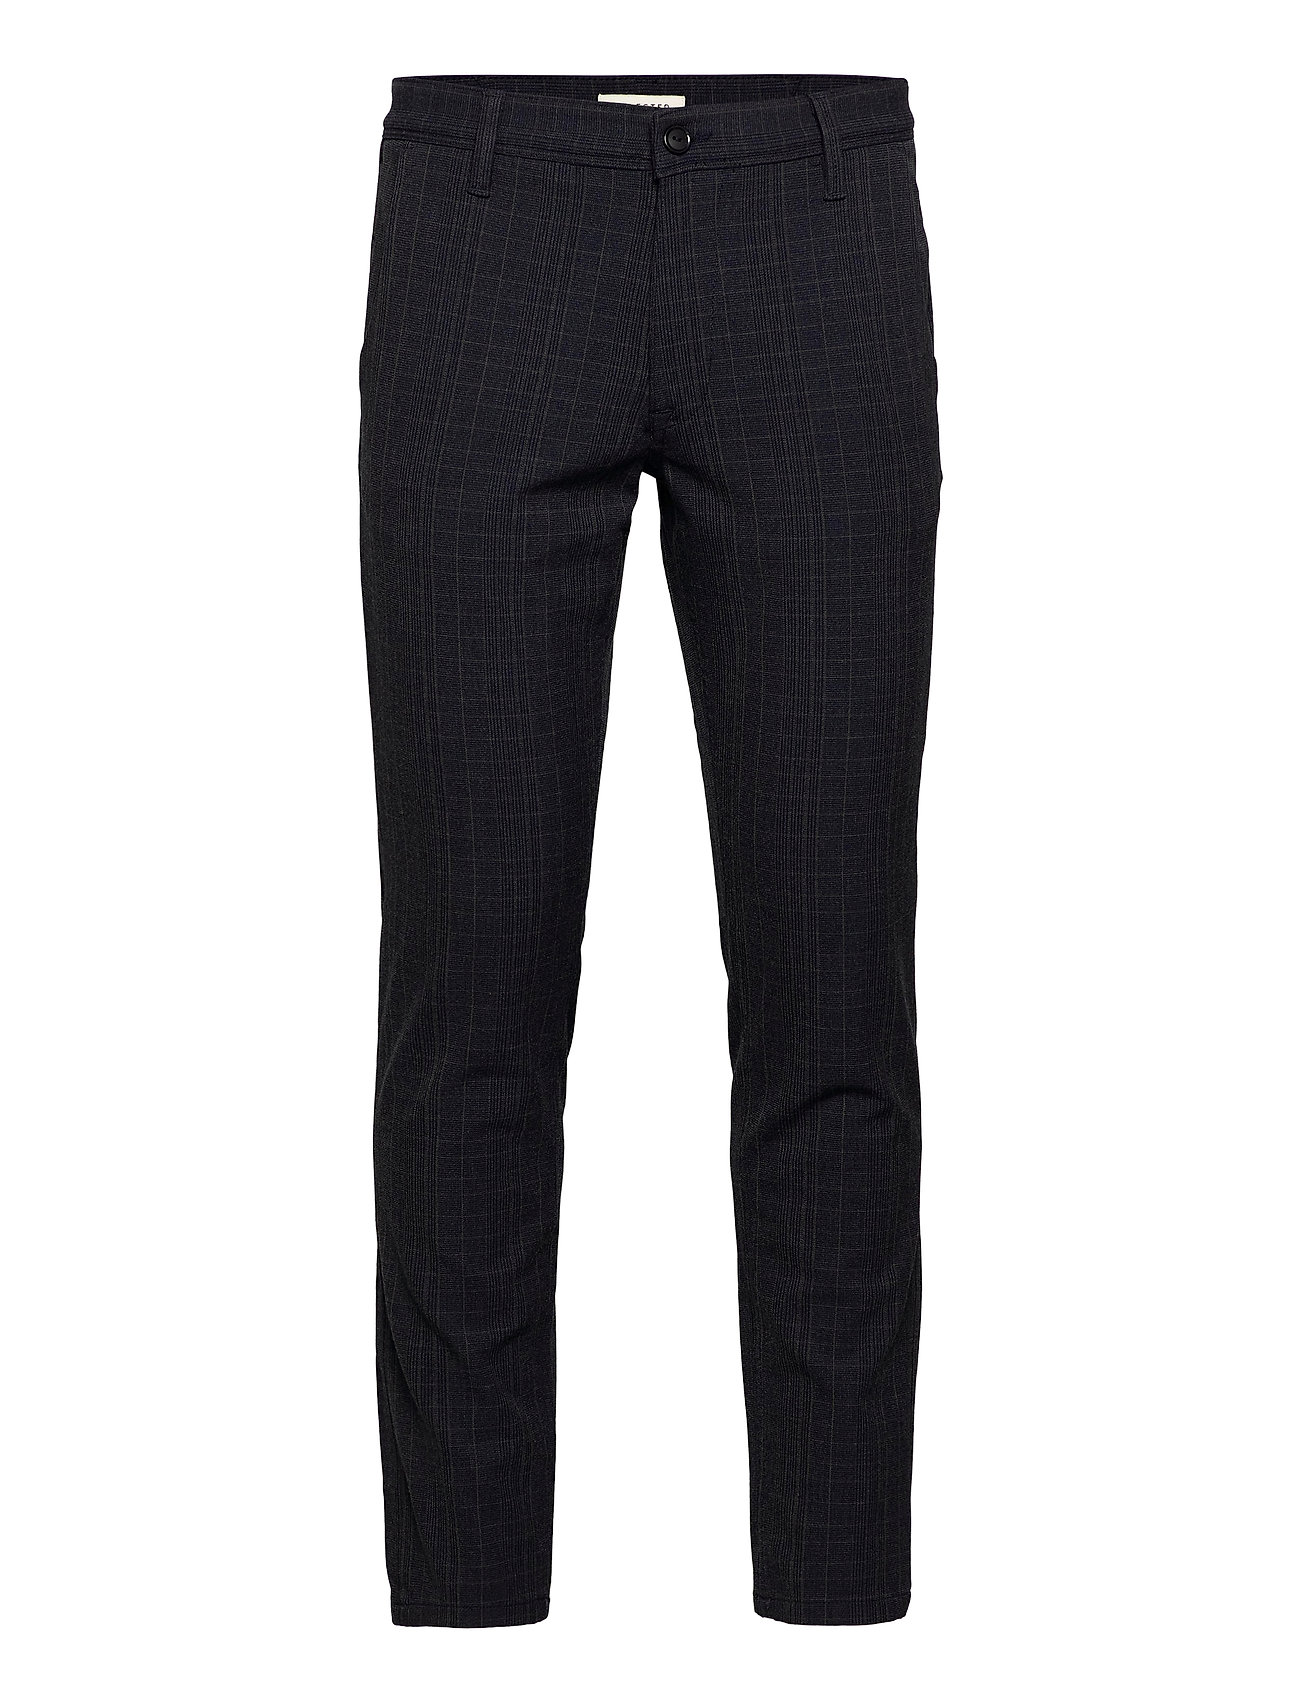 Selected Homme Men's SLHSLIM-Storm Flex Smart Pants W NOOS Suit Grey 4 W34